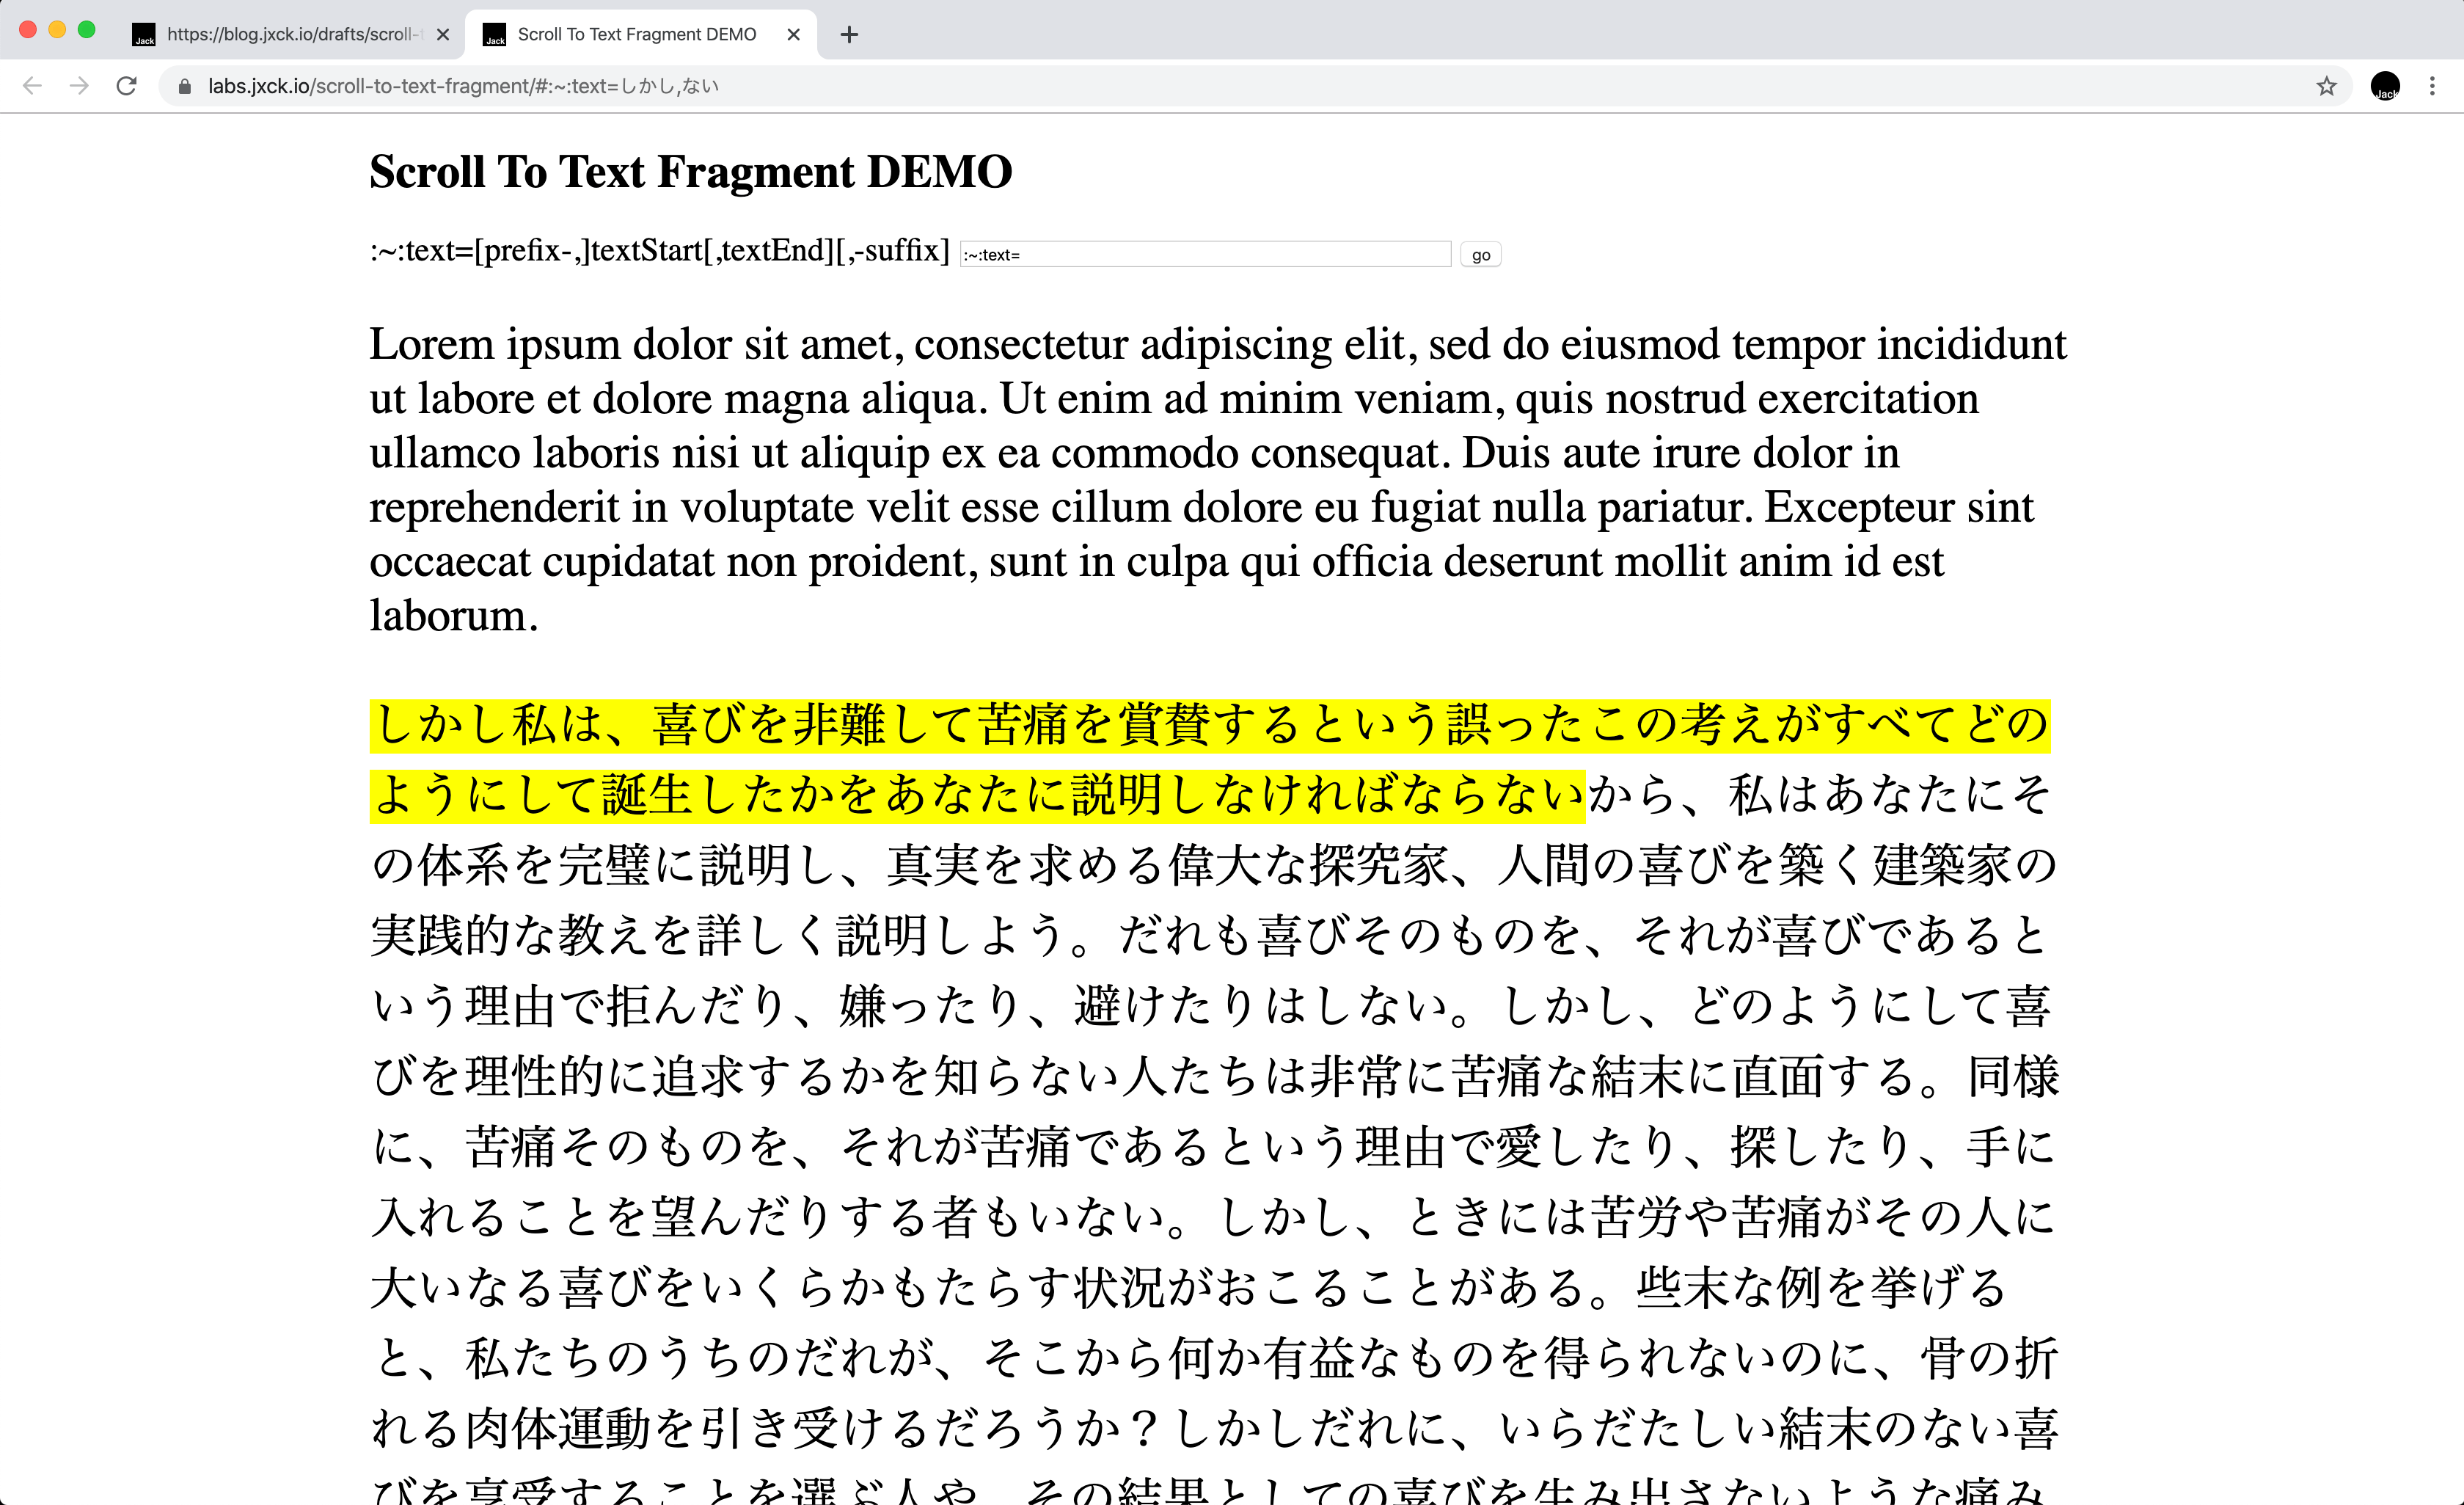 textStart, textEnd を日本語指定